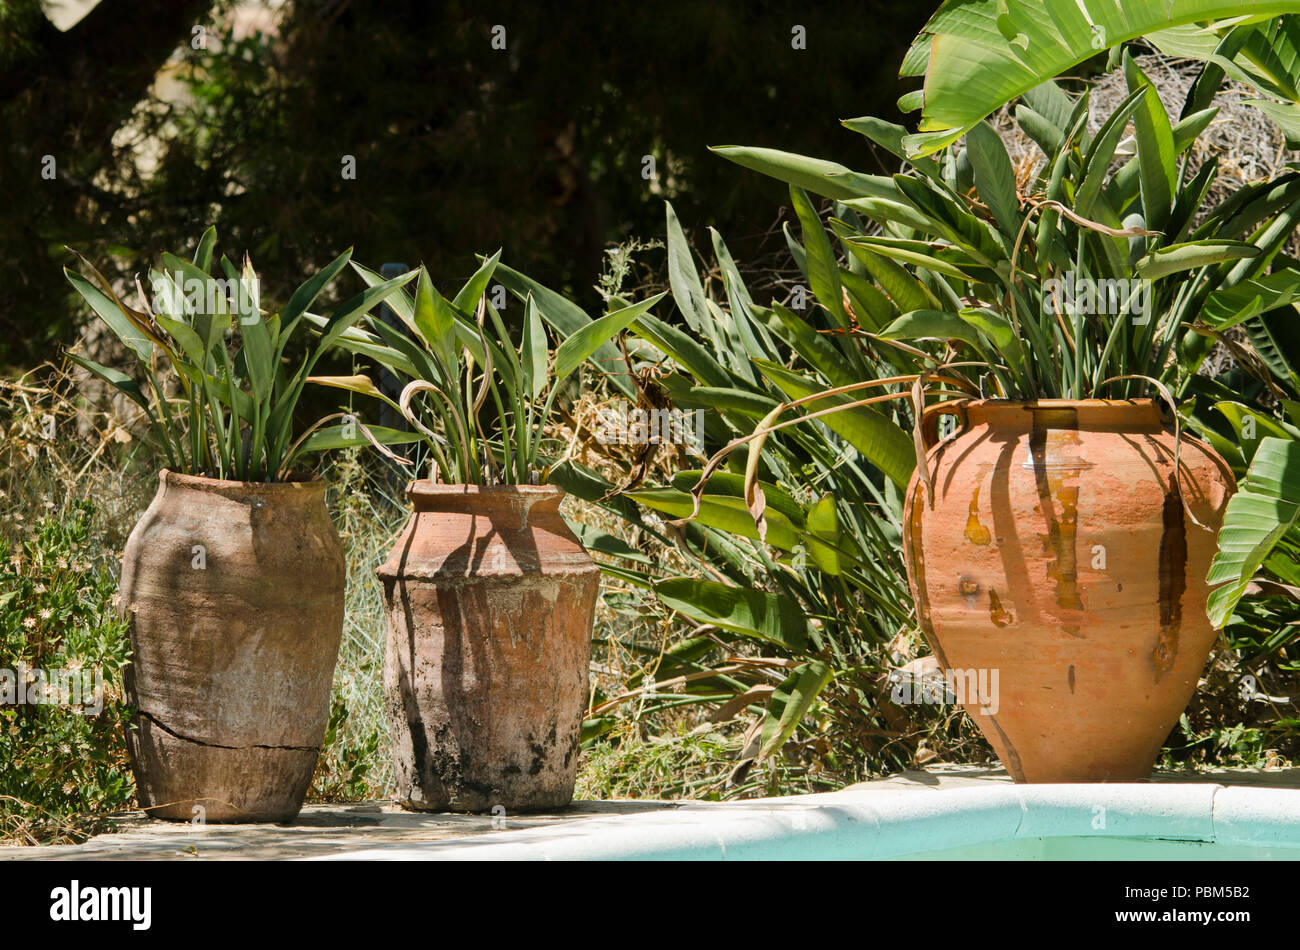 Macetas de terracota mediterránea con Strelitzia Ave del Paraíso, las plantas en el jardín junto a la piscina, España. Foto de stock